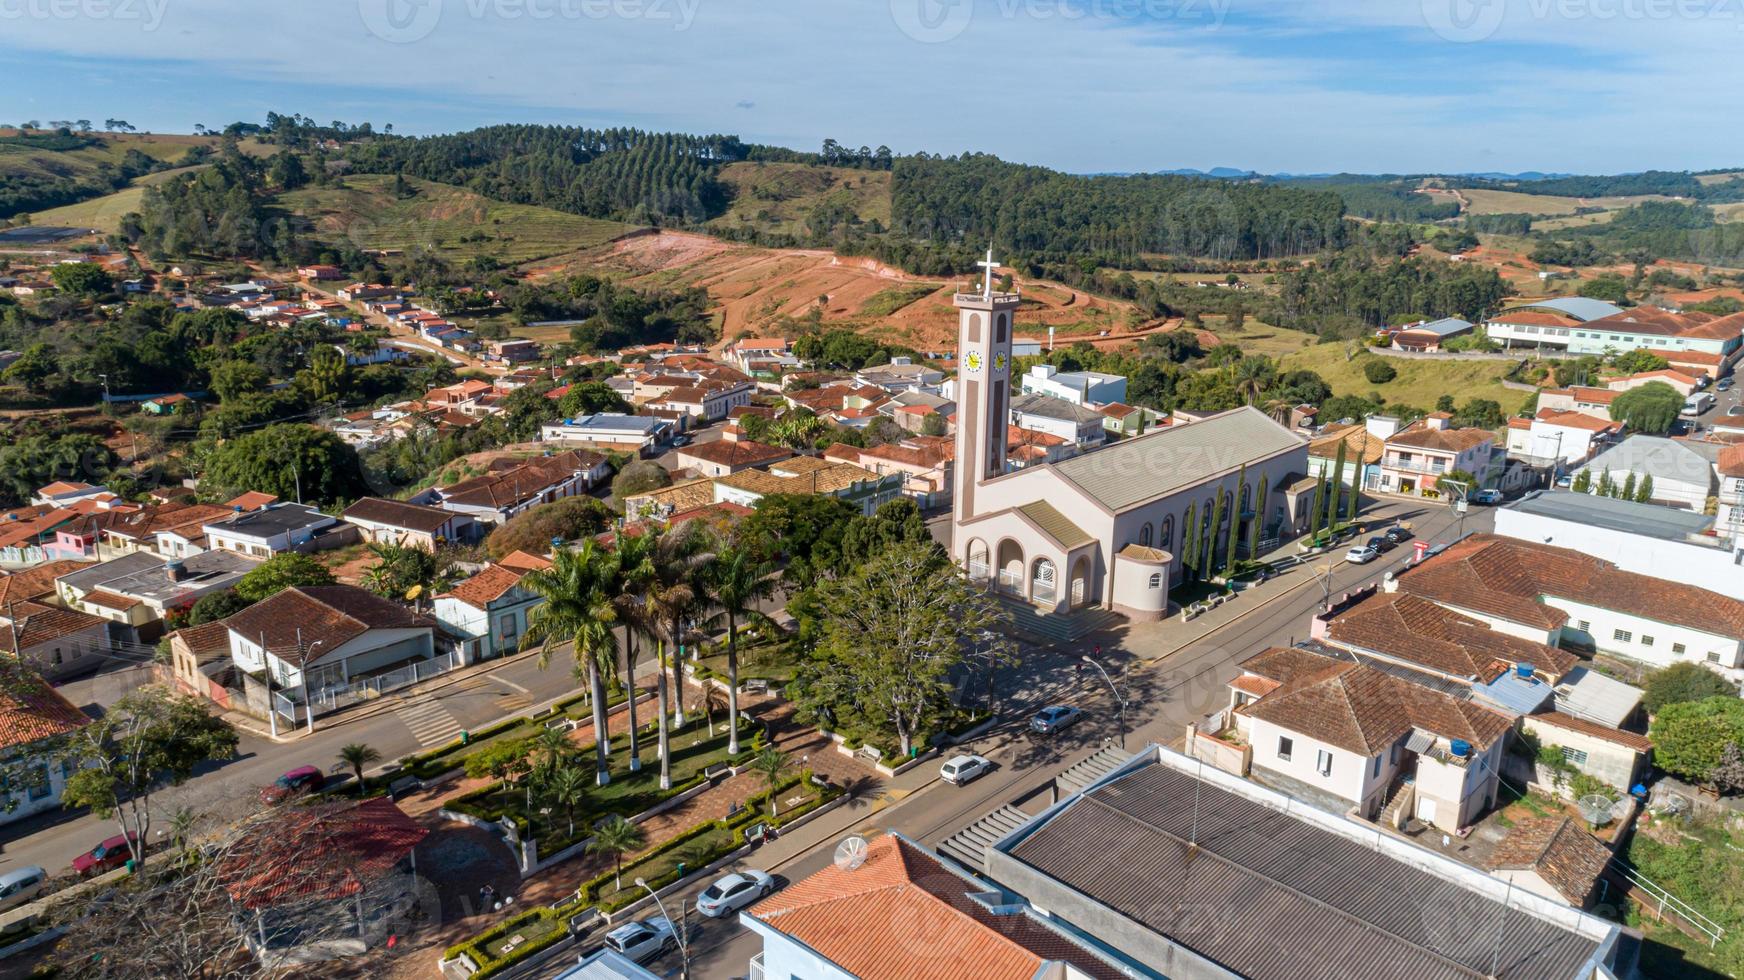 veduta aerea di una città brasiliana foto